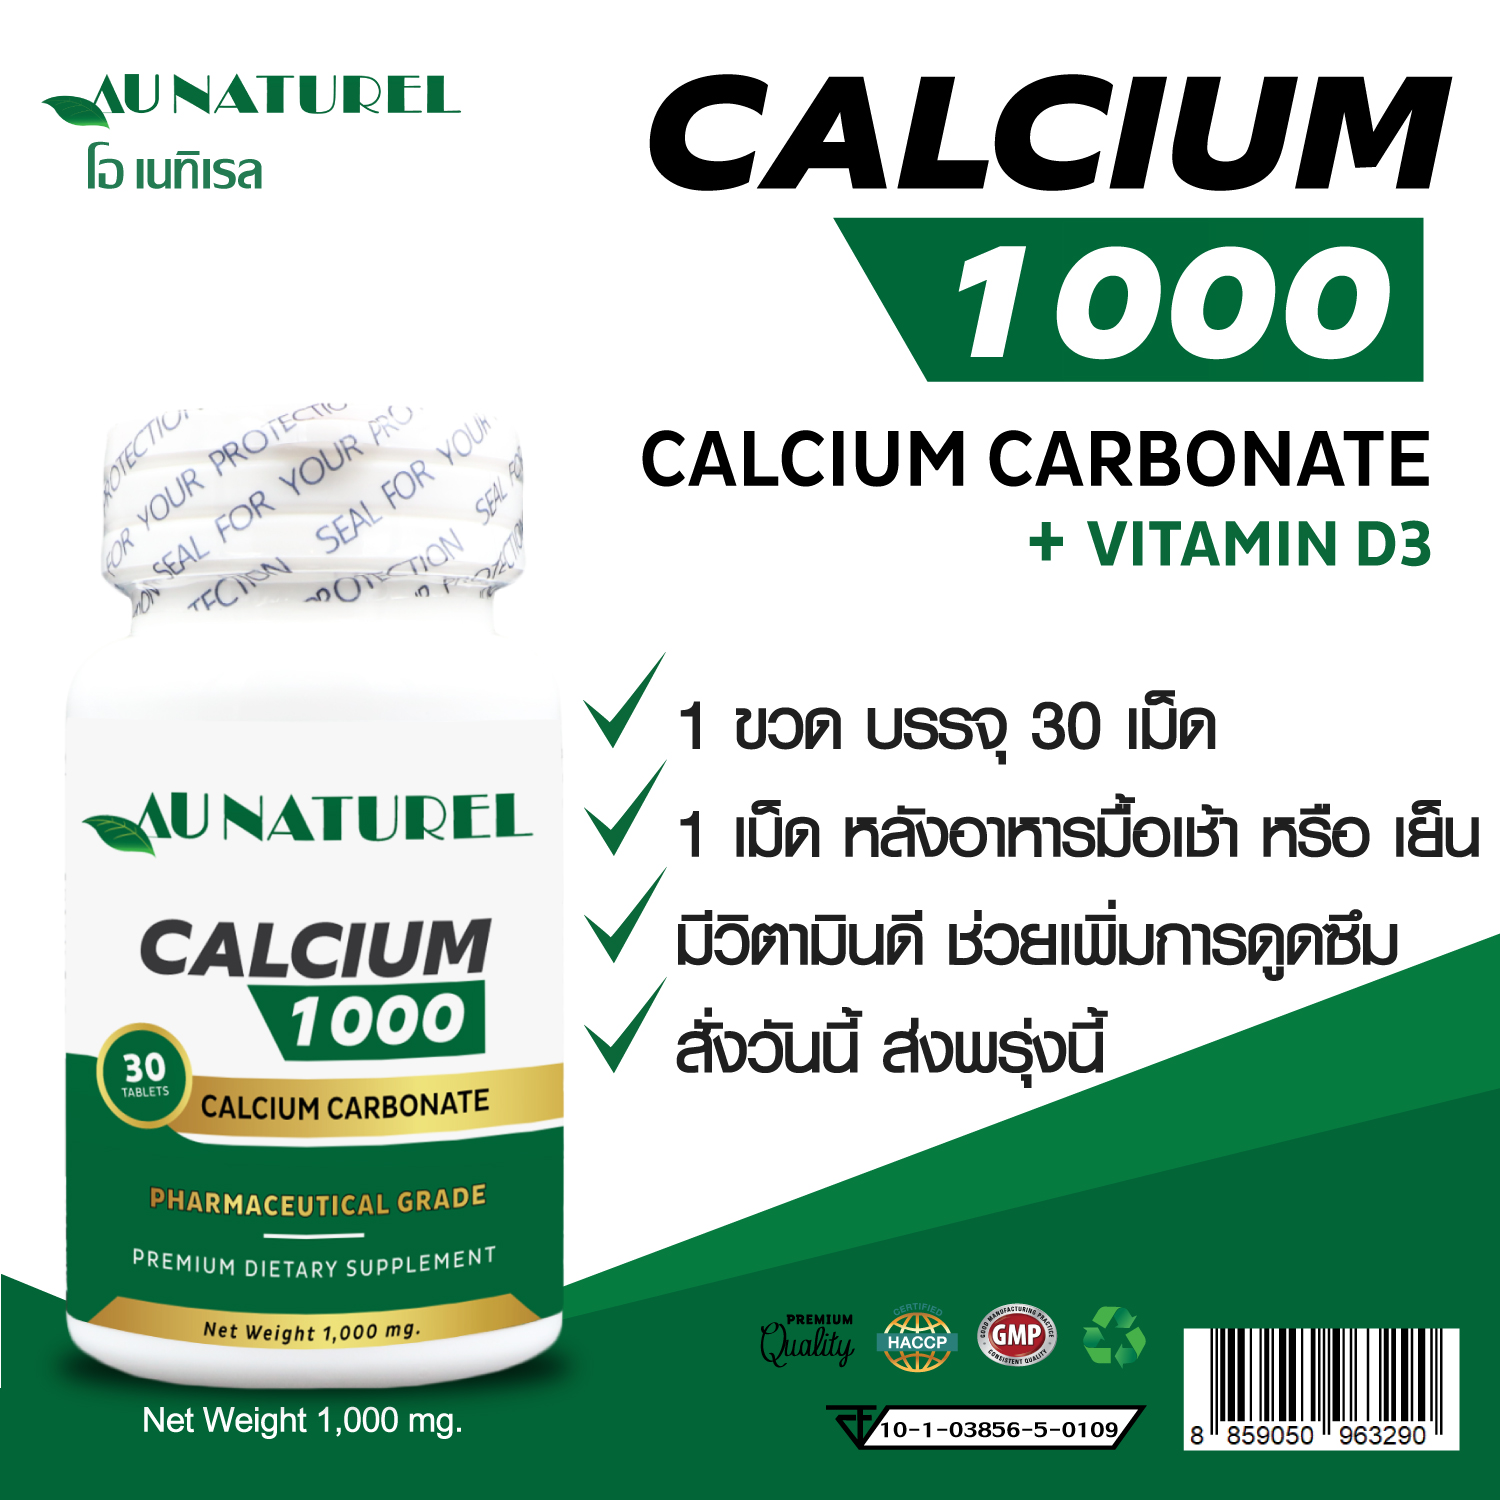 แคลเซียม พลัส วิตามินดี โอเนทิเรล Calcium Plus Vitamin D AU NATUREL  x 1 ขวด บรรจุ 30 เม็ด แคลเซียม ผสม วิตามินดี